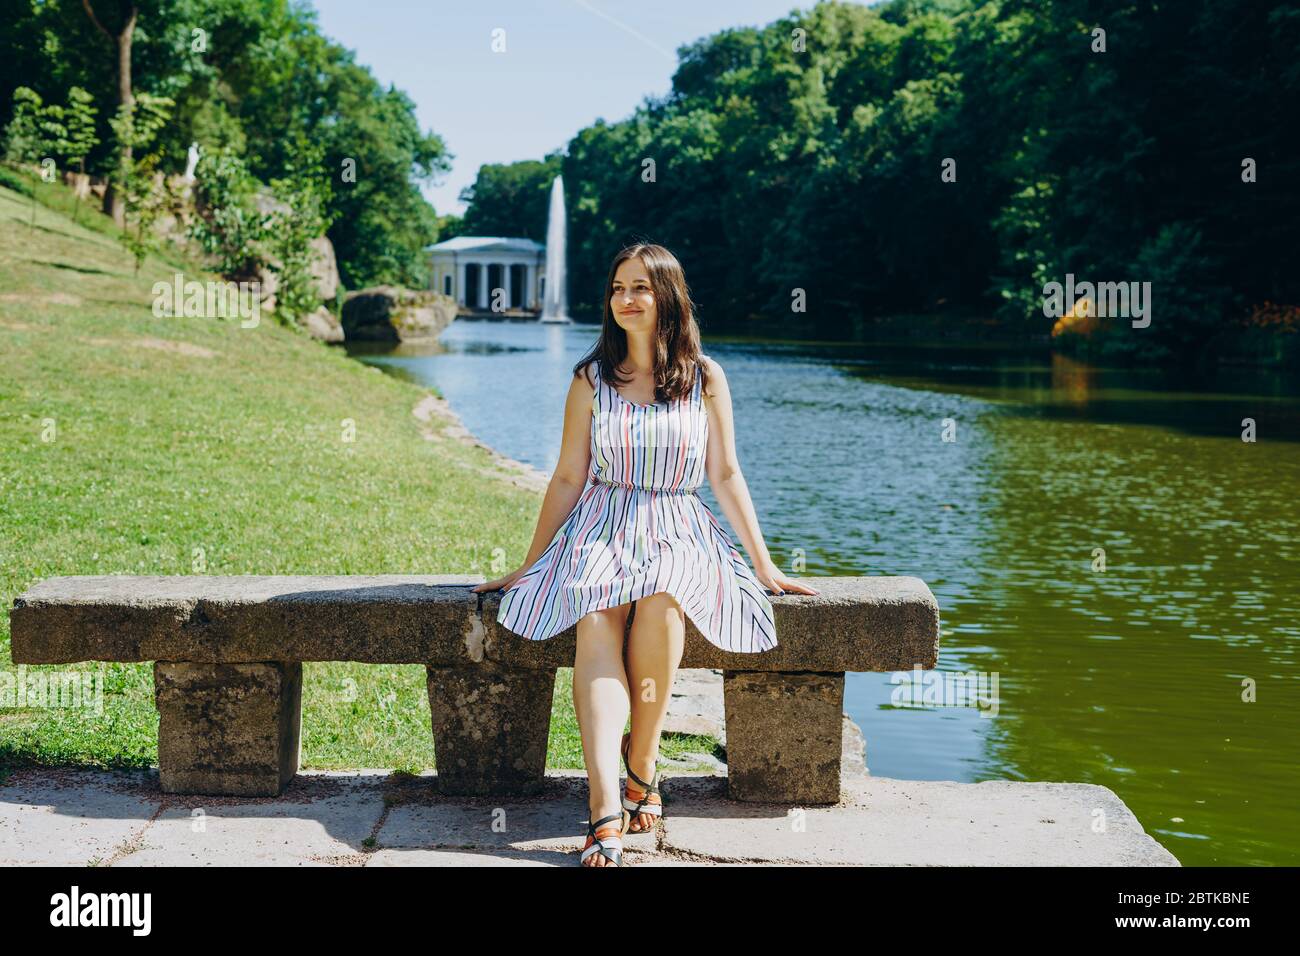 Sofia Park, Uman. Giovane donna seduta su una panchina sullo sfondo del lago con una fontana. La ragazza in un vestito si siede su una panchina di pietra. Foto Stock